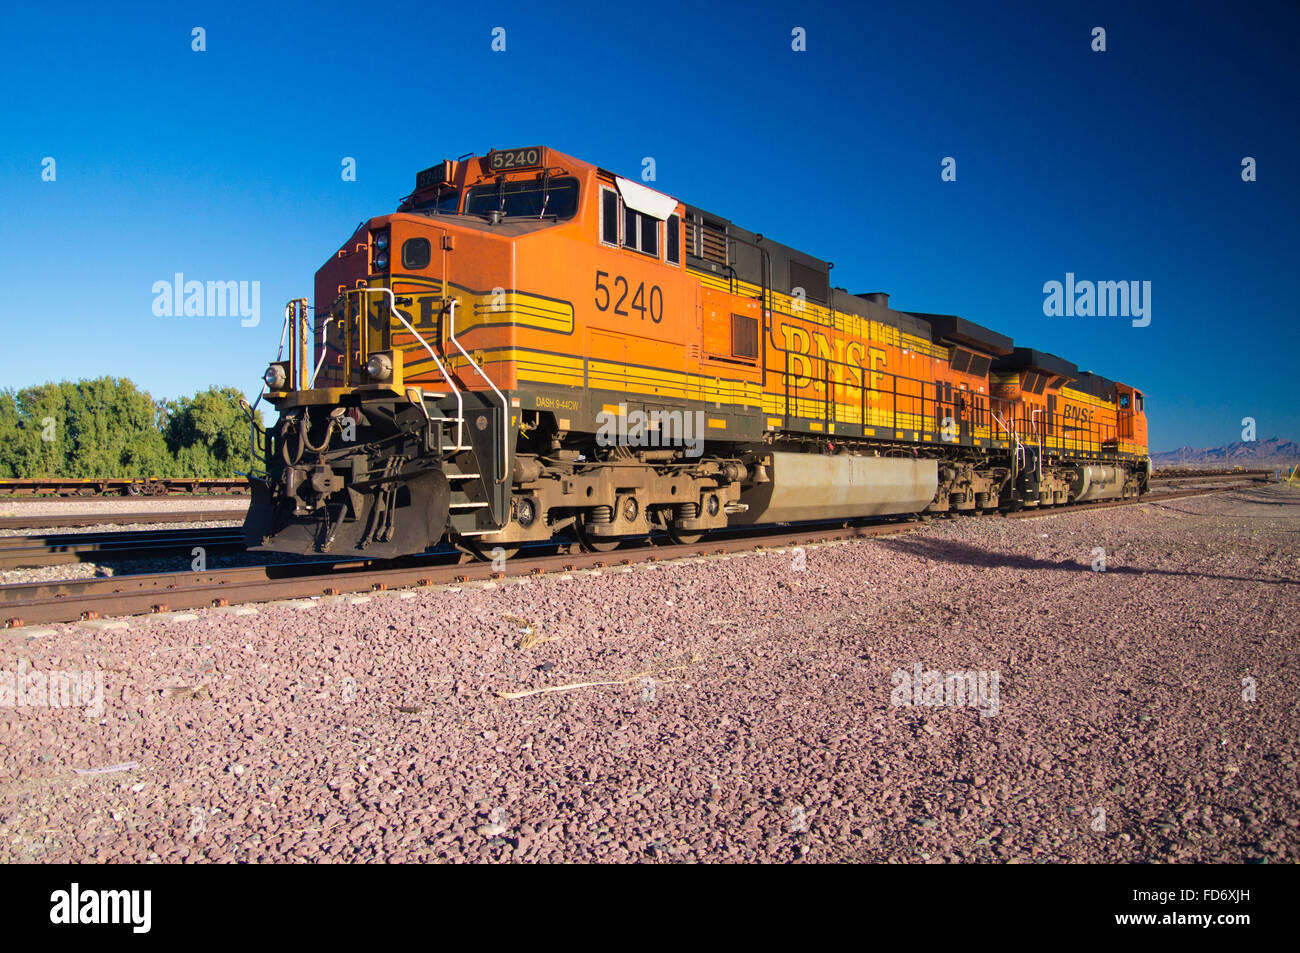 Orange et jaune distinctif Burlington Northern Santa Fe le train de marchandises no 5240 de la Locomotive sur la voie ferrée à la ville de Needle Banque D'Images